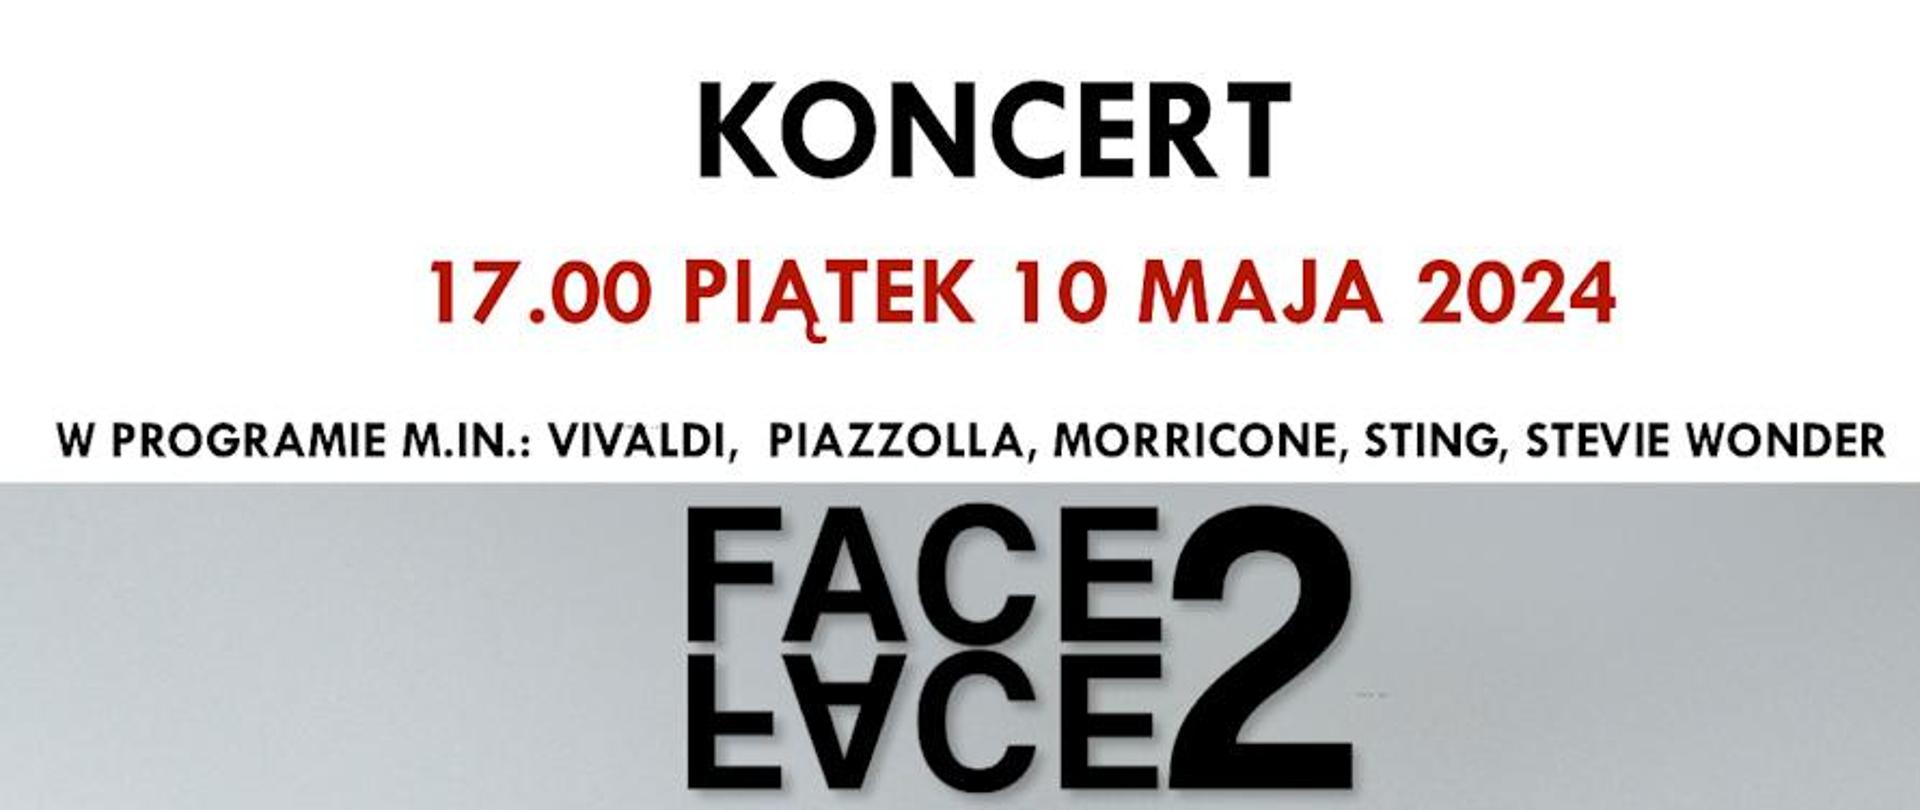 Plakat zdjęcie dwóch akordeonistów powyżej tekst koncert o godzinie siedemnastej w piątek 10 maja 2024 duet face 2 face Państwowa Szkoła Muzyczna w Limanowej.